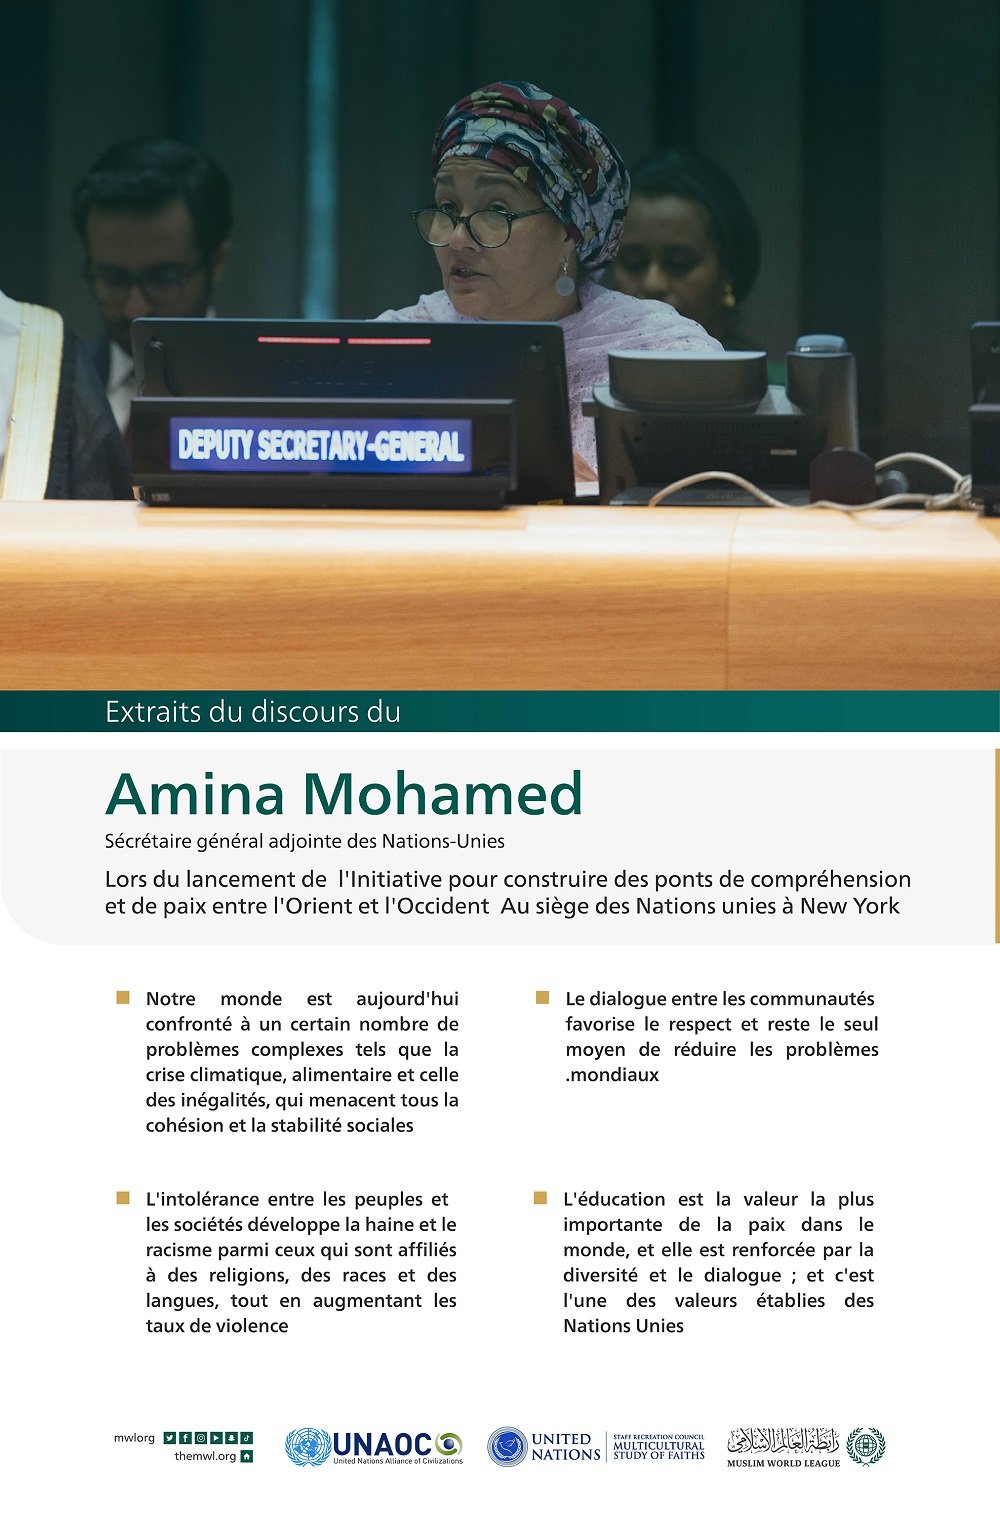 Extraits du discours d’Amina Mohamed, lors du lancement de l'initiative de la Ligue islamique mondiale pour "construire des ponts de compréhension et de paix entre l'Orient et l'Occident " depuis le siège des Nations Unies à New York :